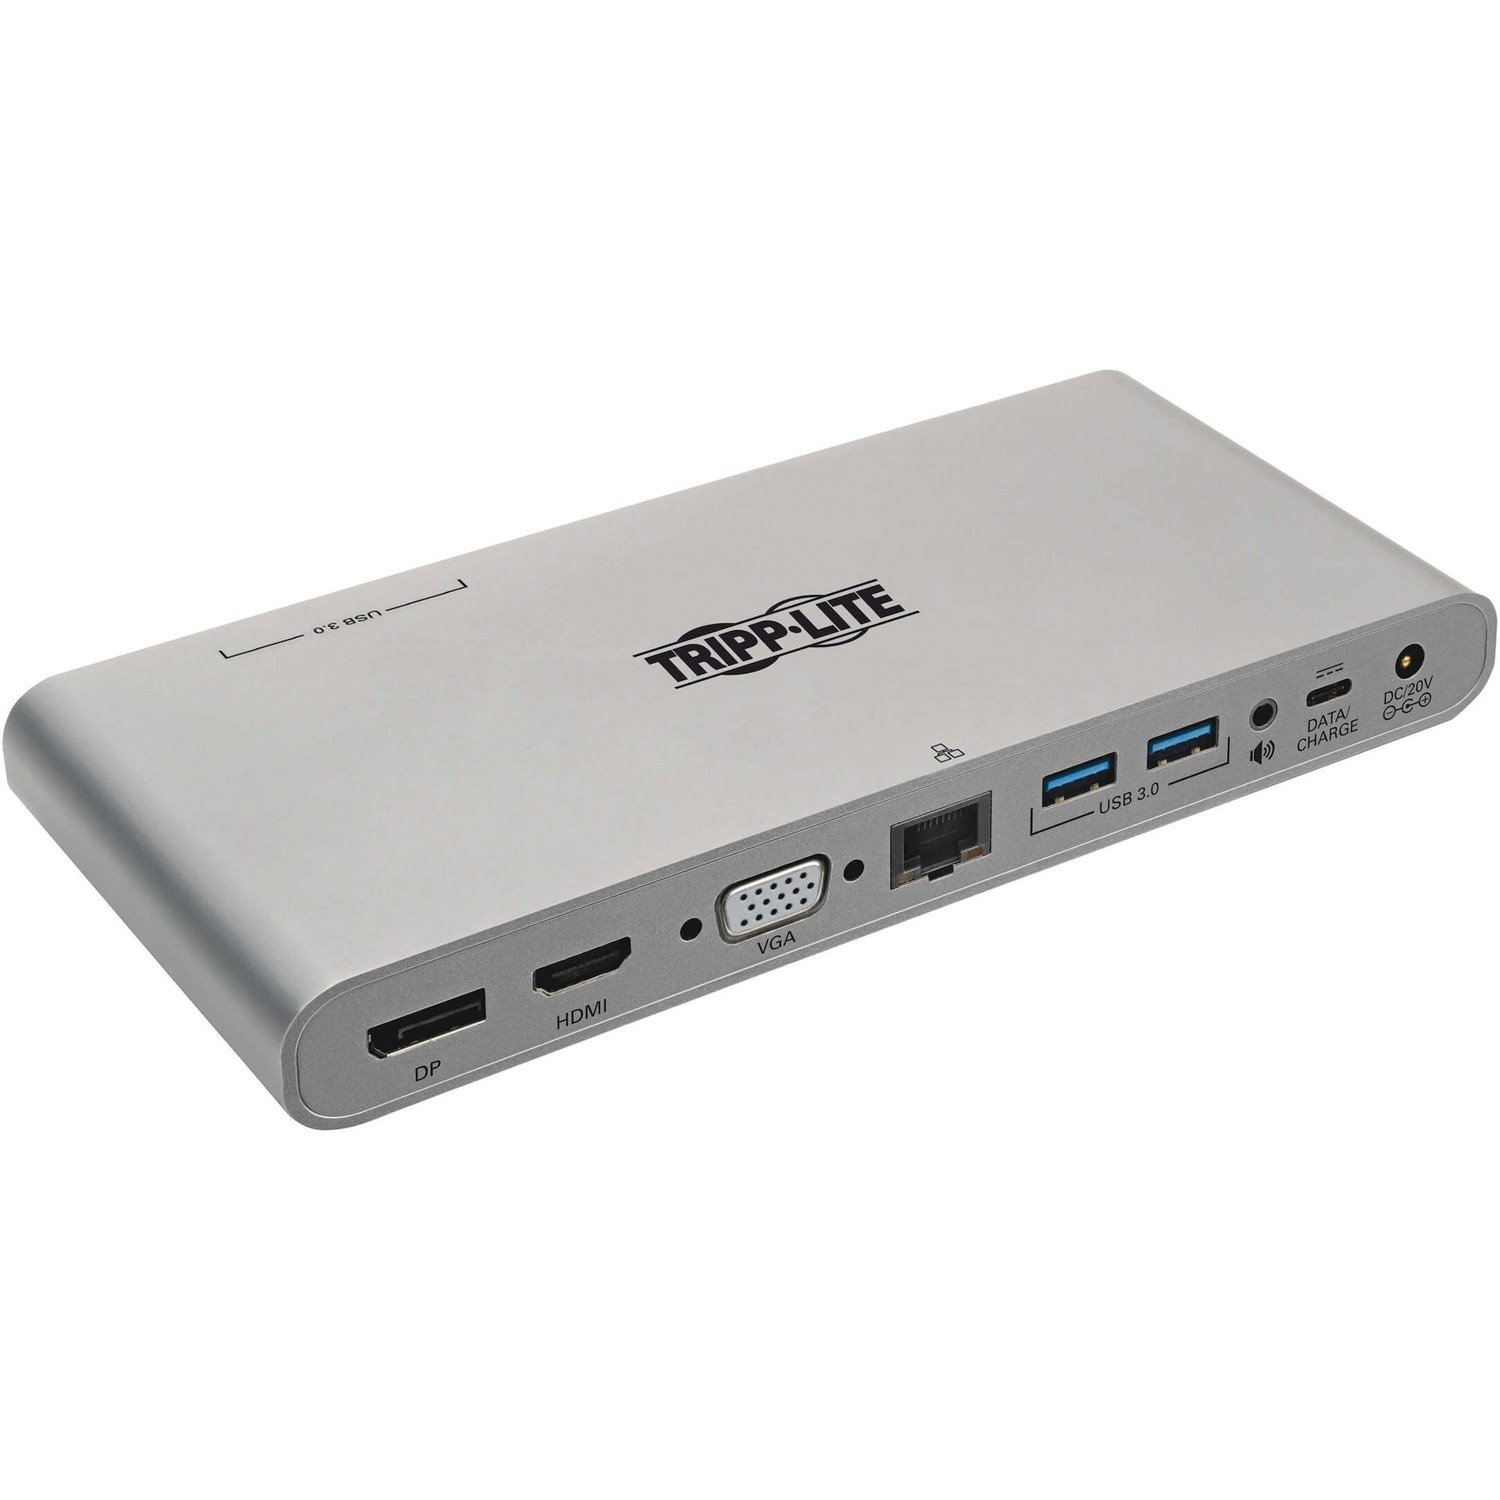 Eaton Tripp Lite Series USB-C Dock, Triple Display - 4K HDMI/DisplayPort, VGA, USB 3.x (5Gbps), USB-A/C Hub Ports, GbE, 100W PD Charging - Thunderbolt 3, Silver